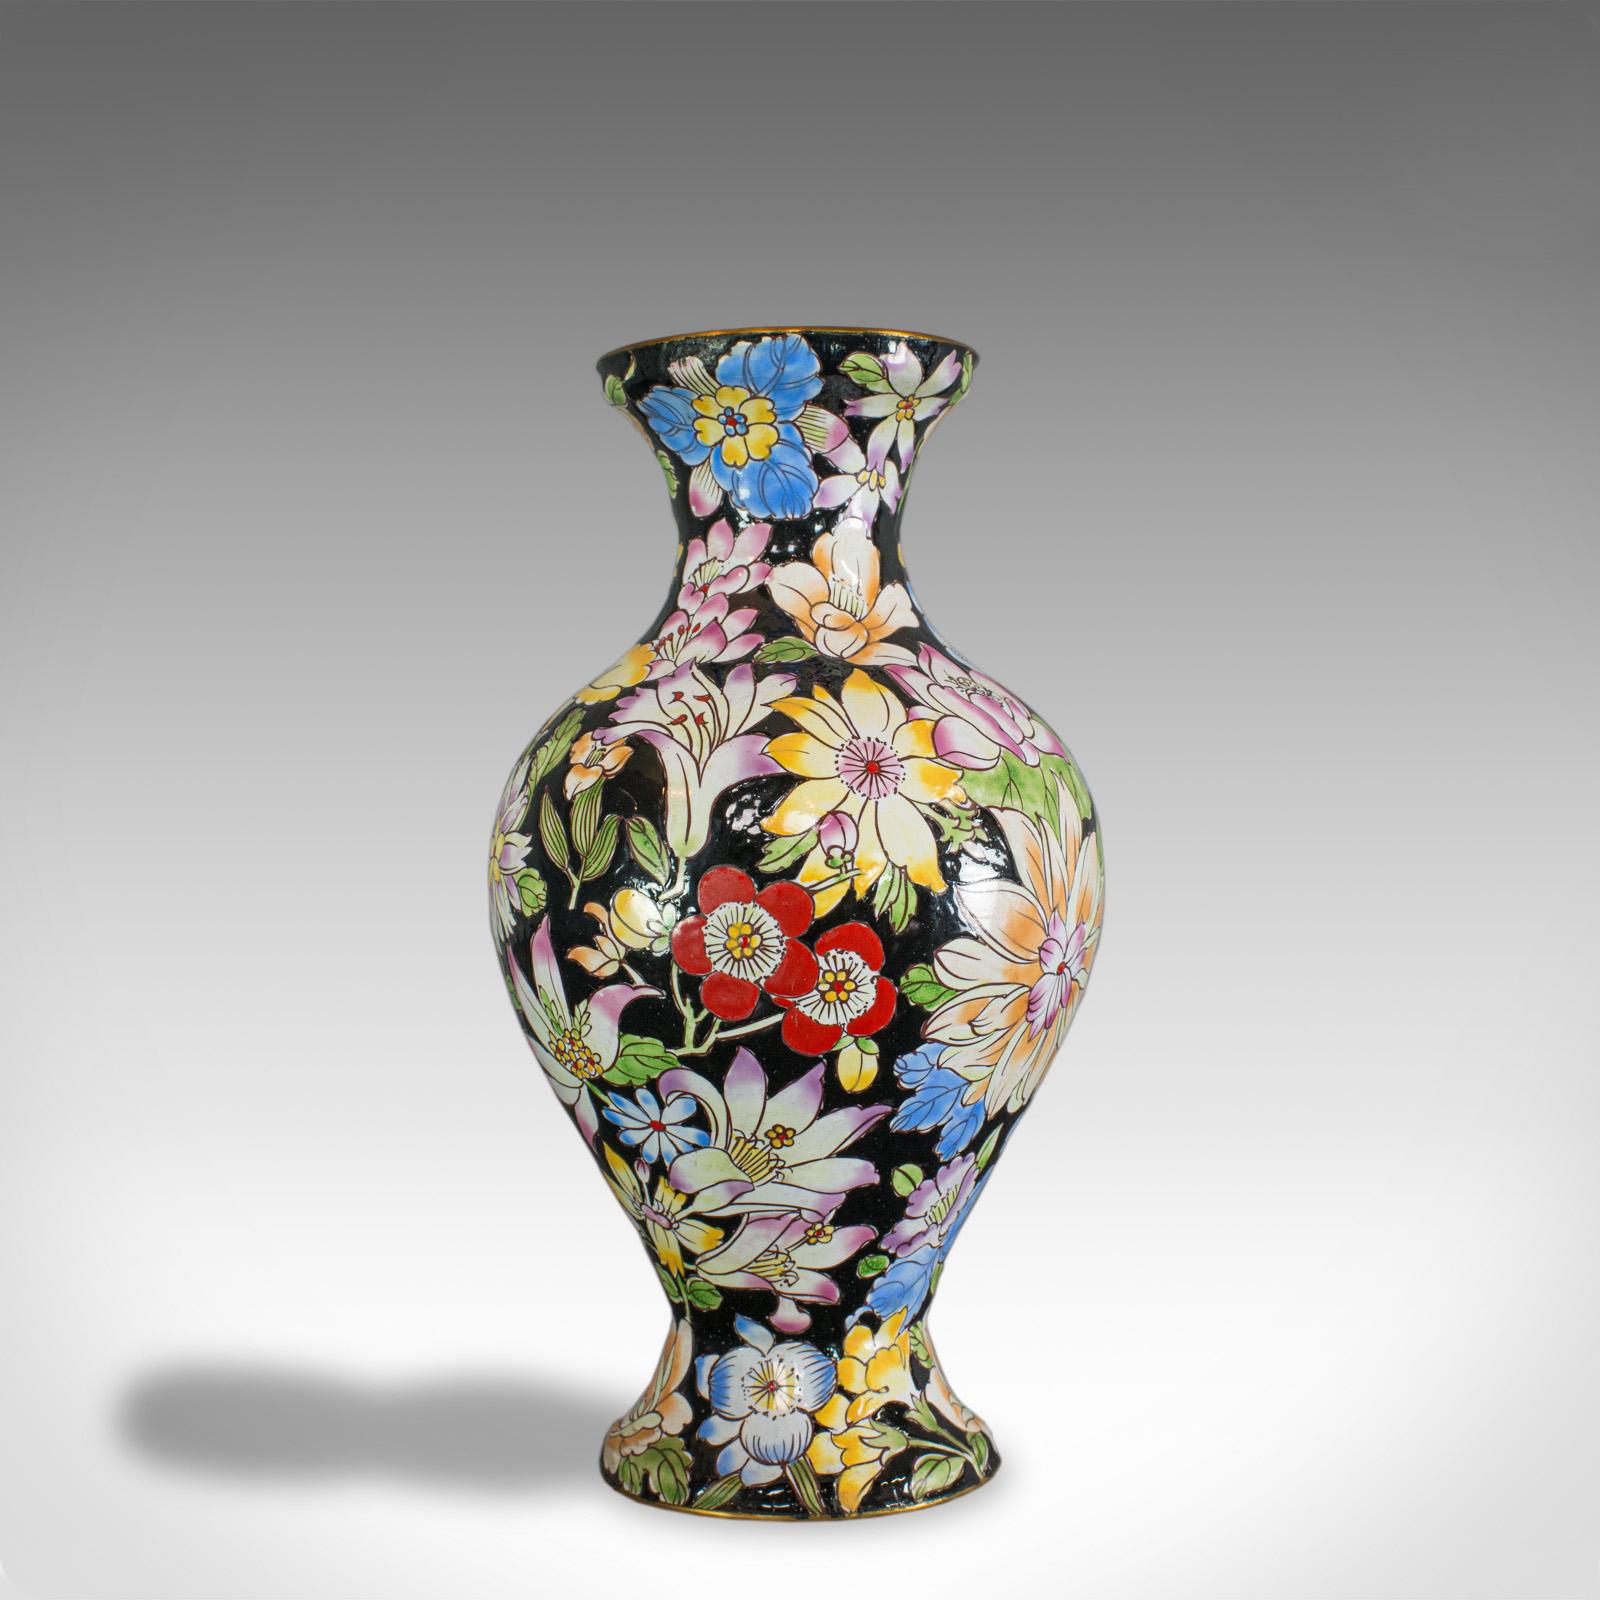 Il s'agit d'un vase décoratif ancien. Une urne balustre française cloisonnée, datant de la période victorienne de la fin du XIXe siècle, vers 1880.

Bel exemple de cloisonné français
Profondément décorée avec des détails feuillagés
Riche palette